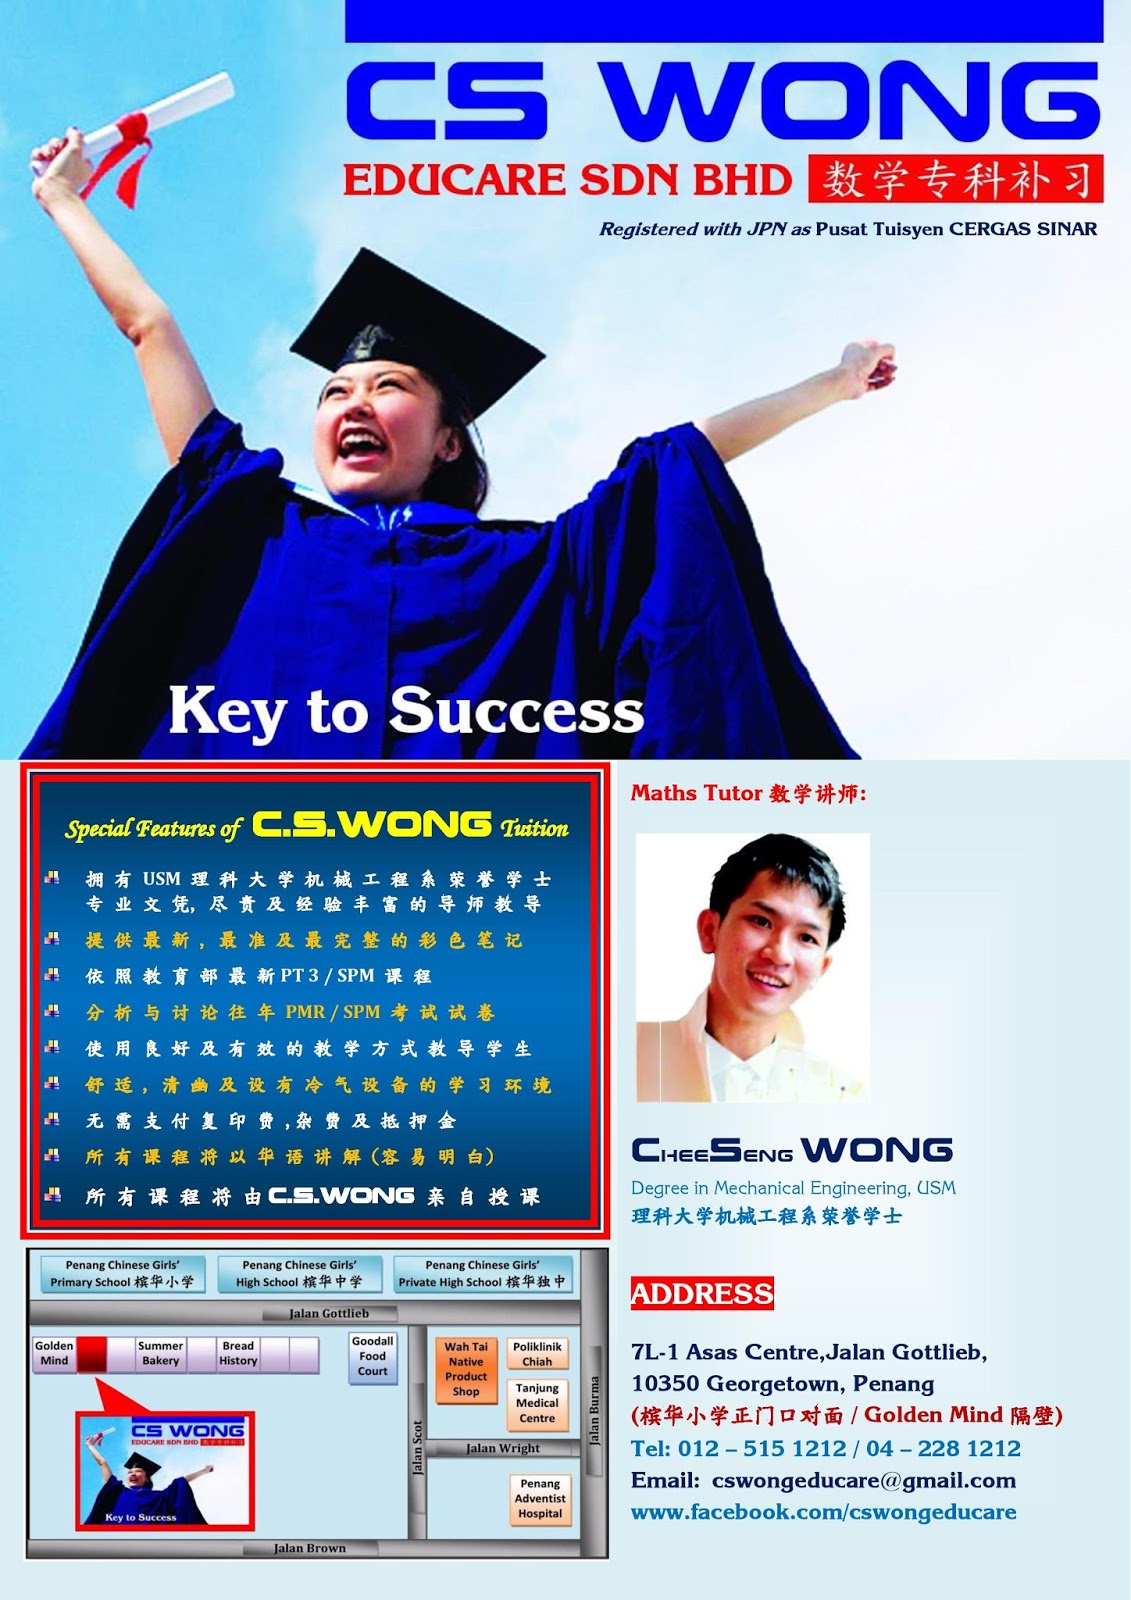 cs-wong-educare-sdn-bhd-2015